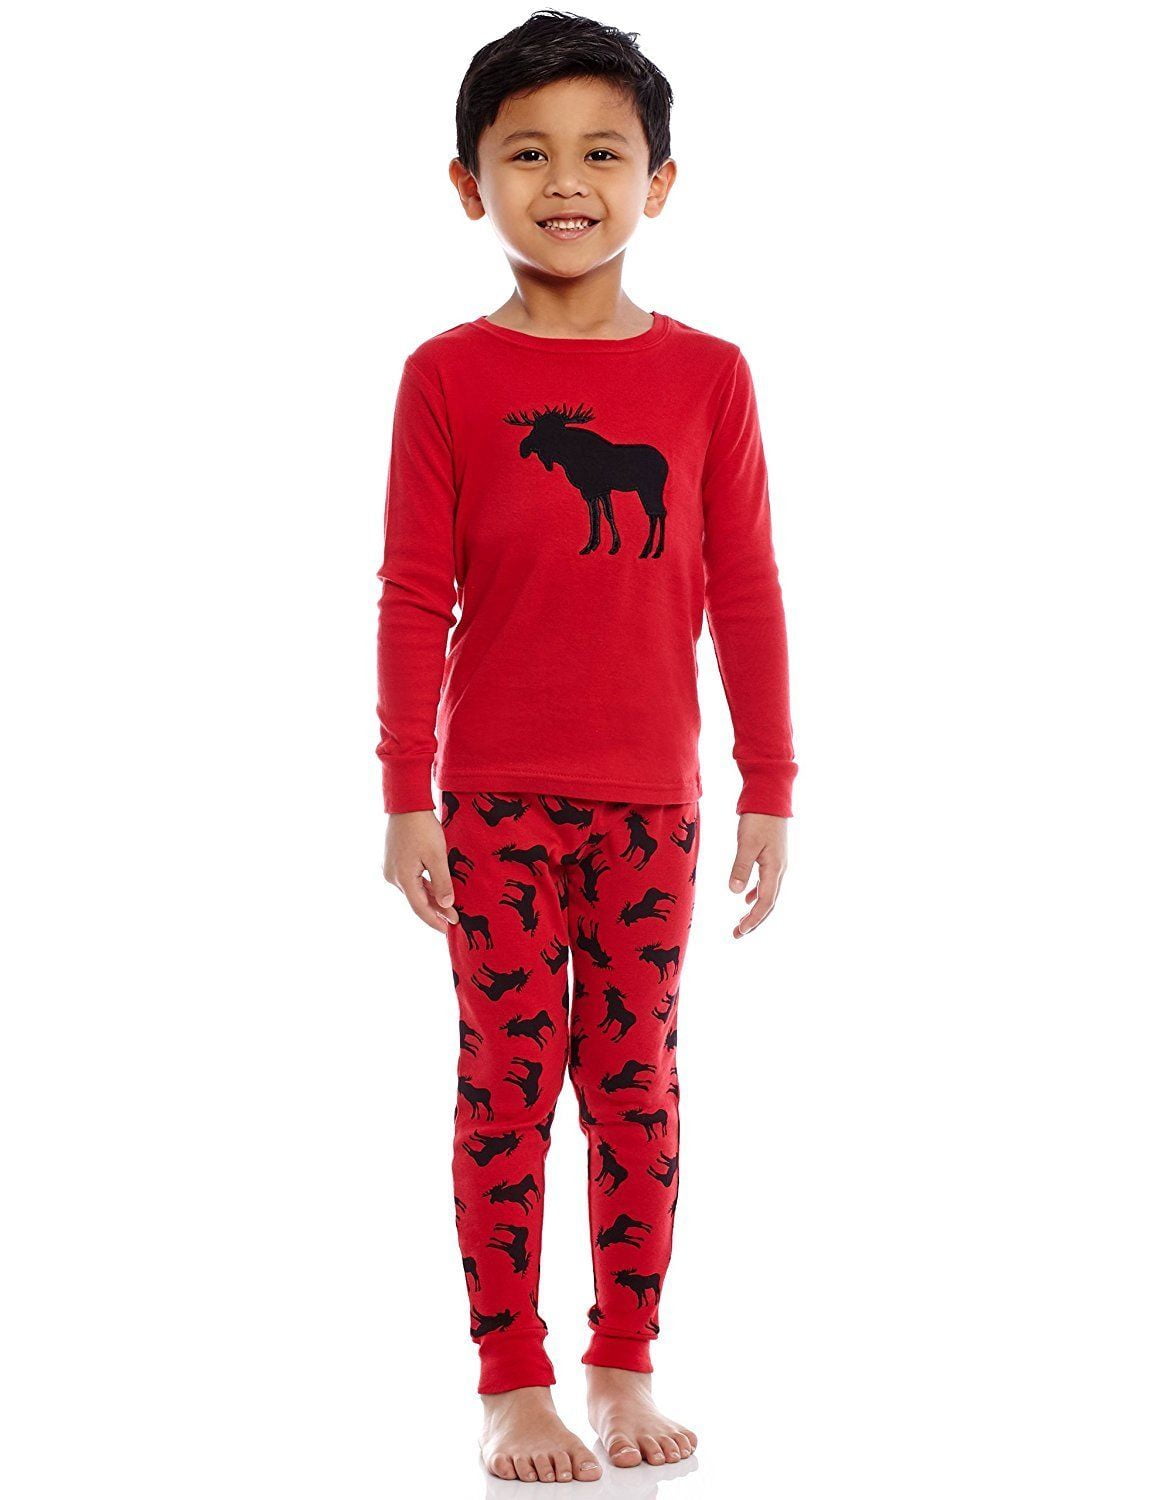 Leveret Kids Christmas Pajamas Boys Girls /& Toddler Pajamas Moose Reindeer 2 Piece Pjs Set 100/% Cotton 12 Months-14 Years